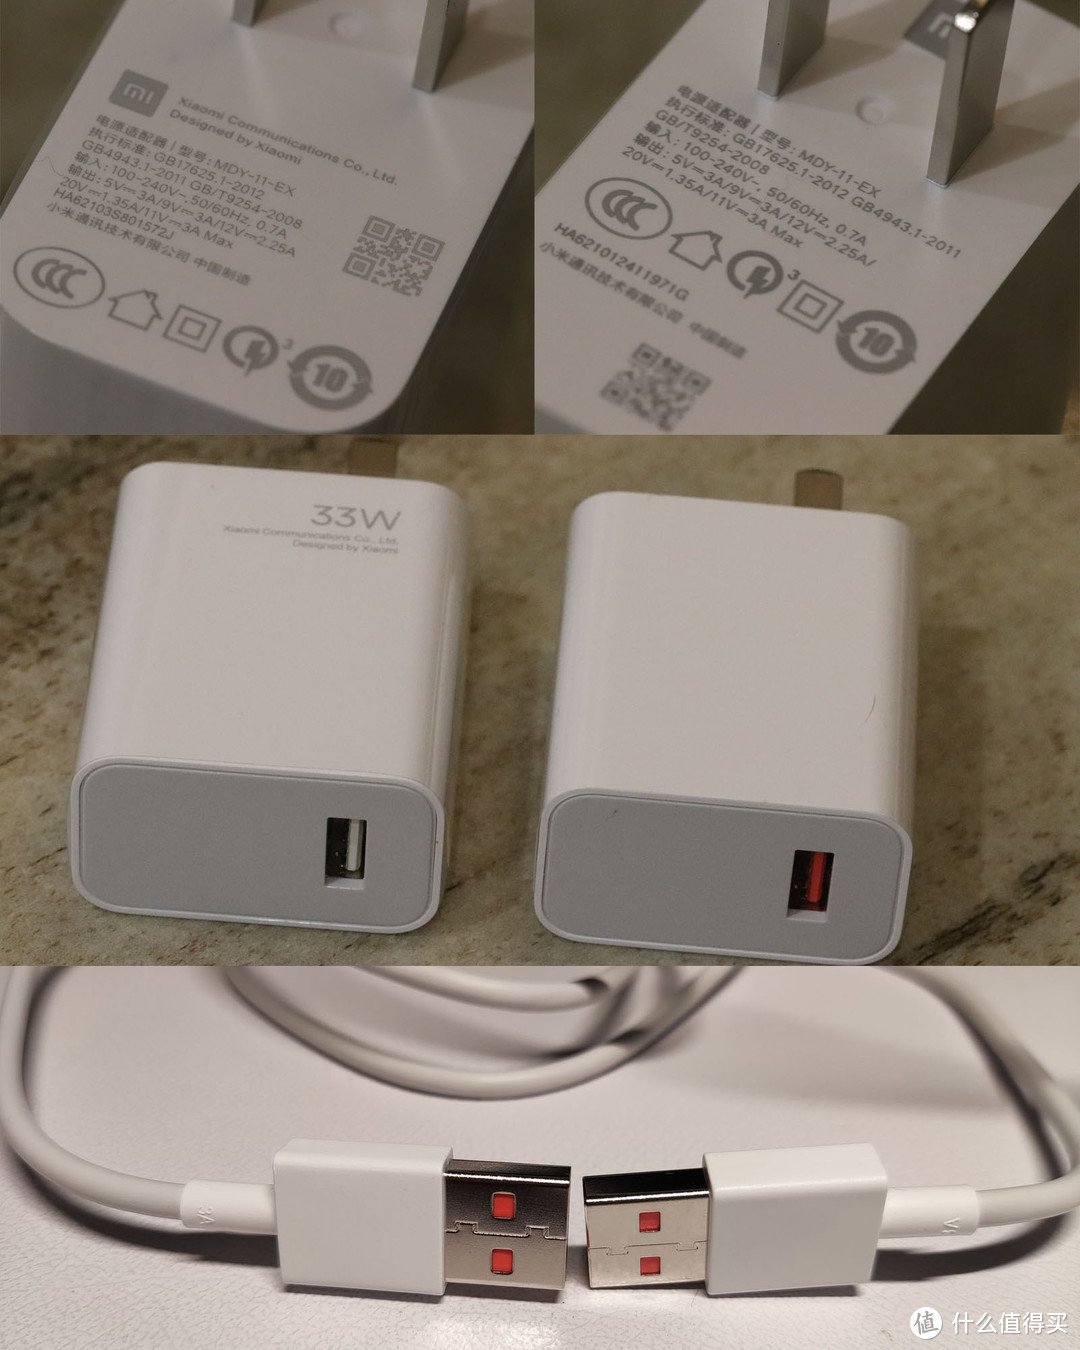 10s的充电套装是单独包装的，K40的在机身包装盒一起。两个充电器型号一样，印刷标识有区别，充电口一个白色一个红色，充电线是一样的